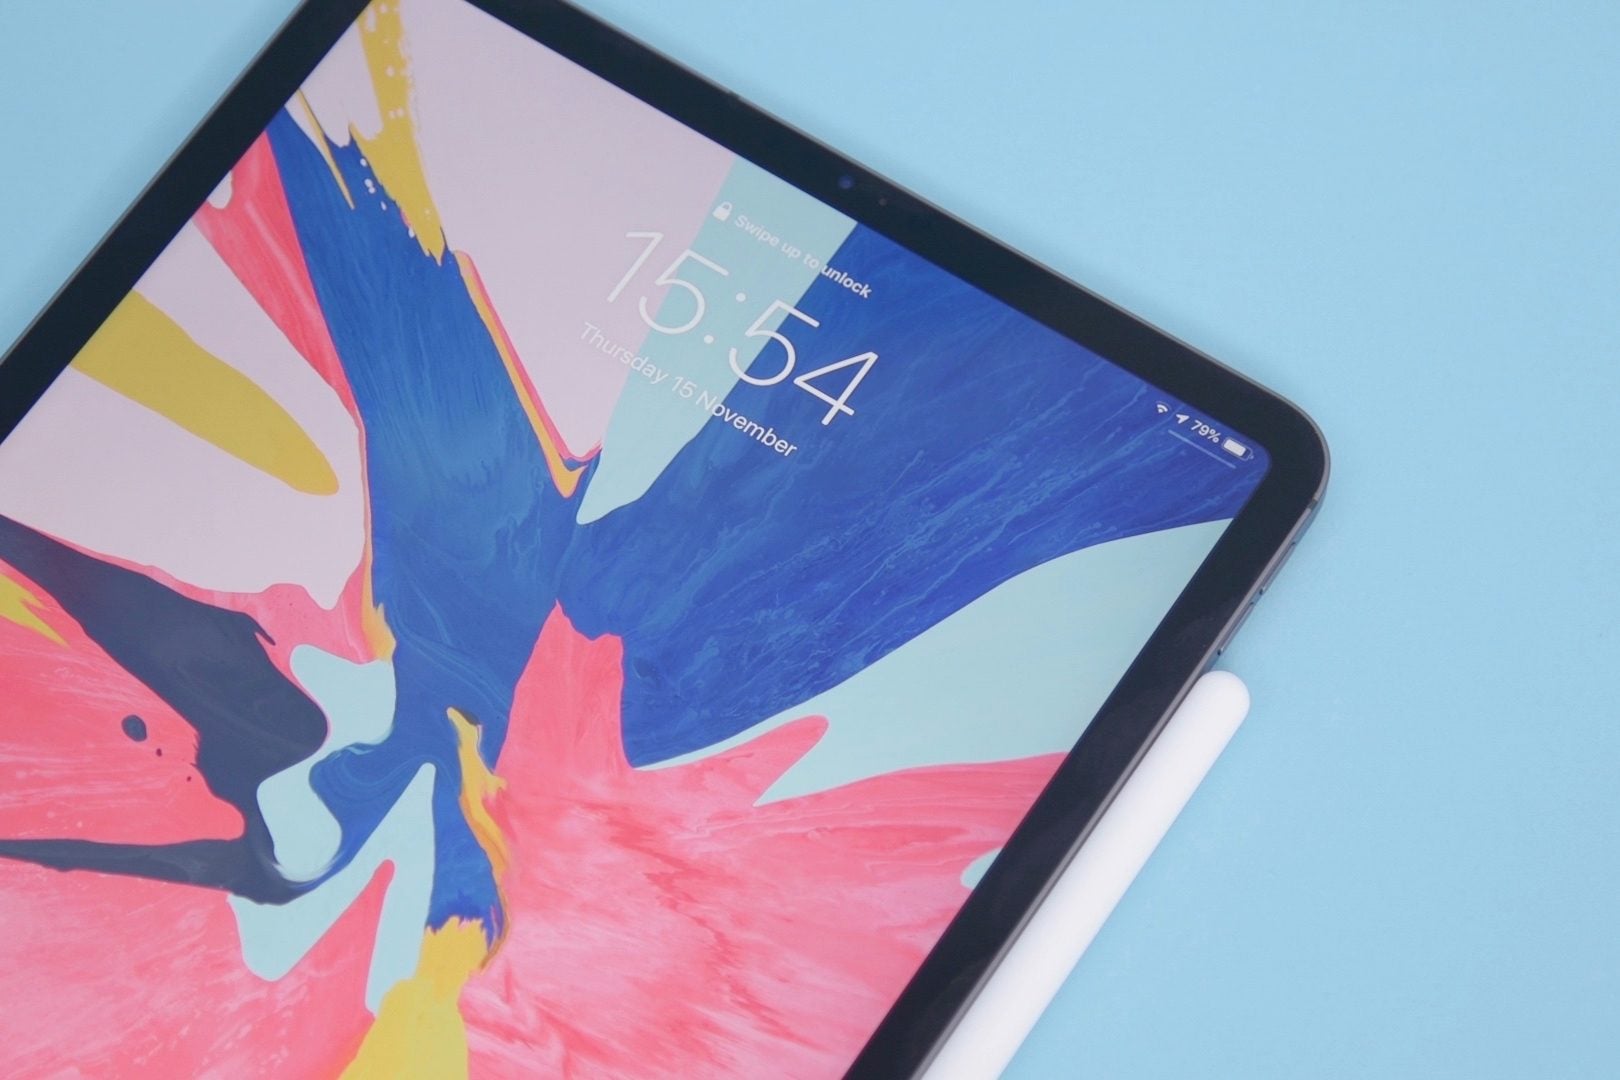 Se rumorea que Apple está fabricando un enorme iPad de 14,1 pulgadas
													
